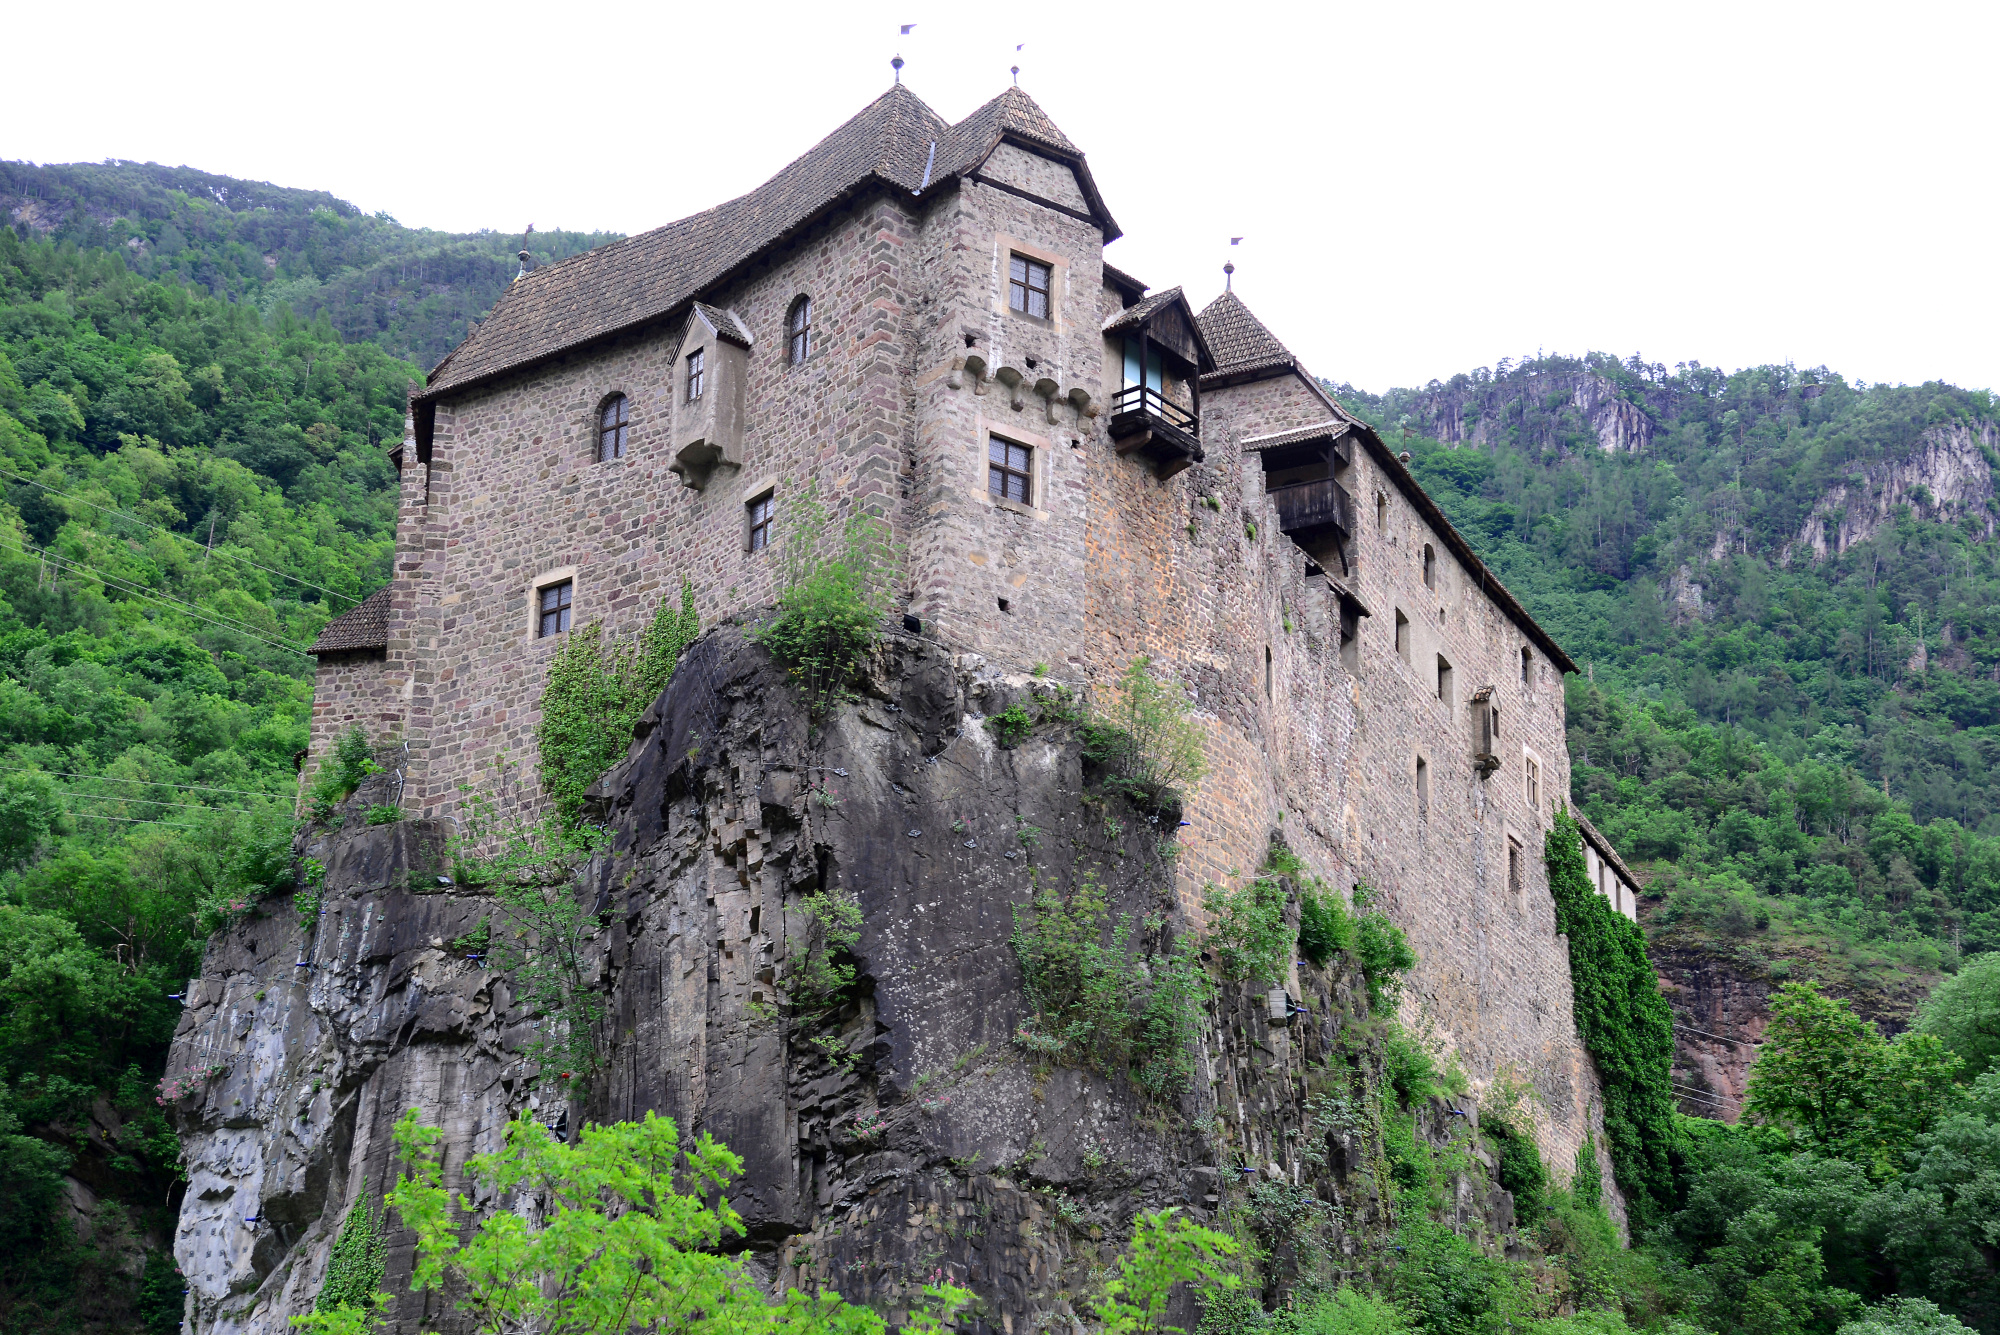 Runklestein Castle in Tyrol